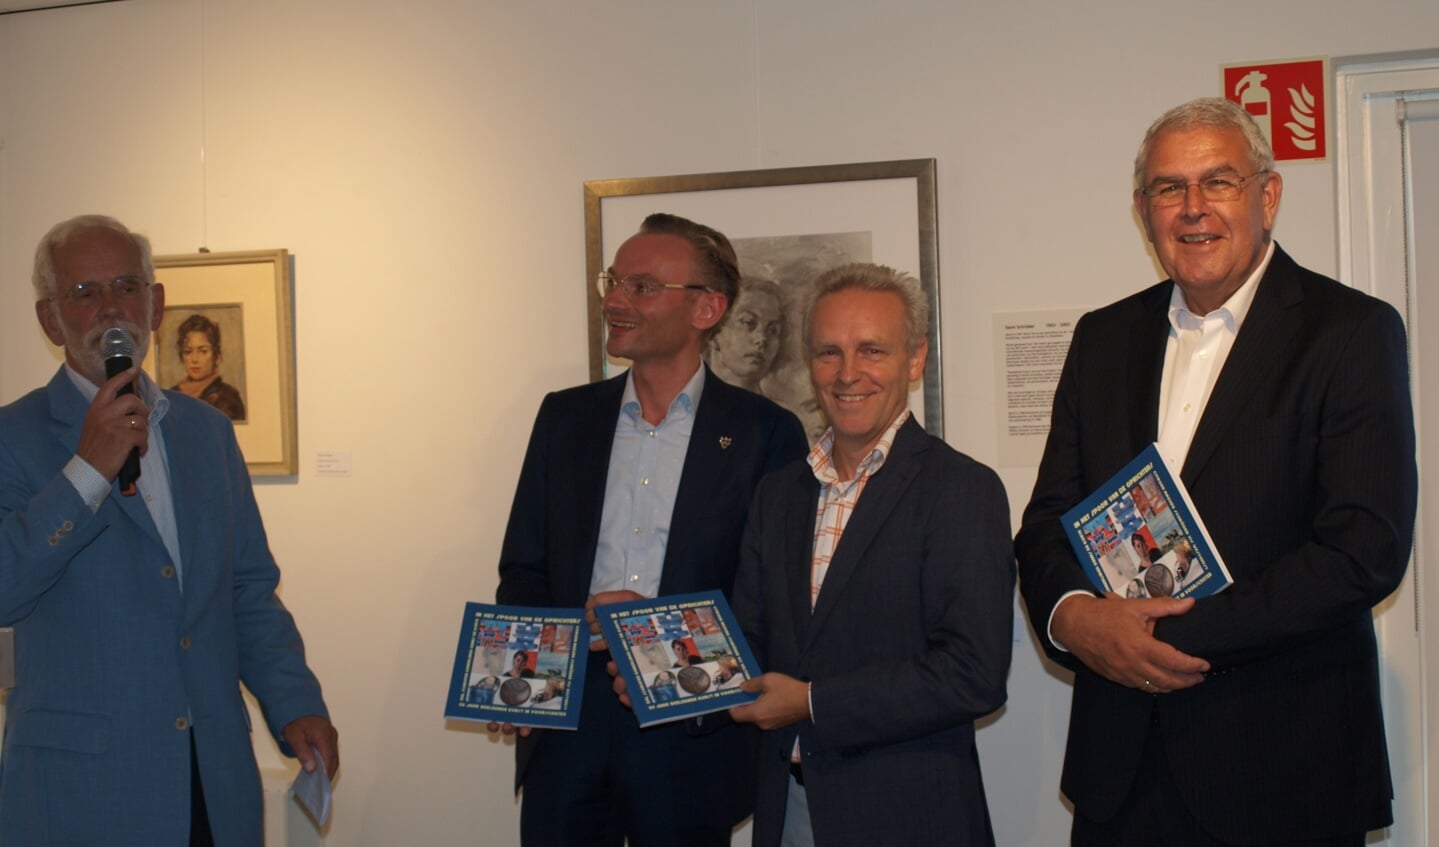 Uitreiking van het jubileum boek. vlnr Gert Both, Nanning Mol, Reinart van Staalduinen, René van der Smeede